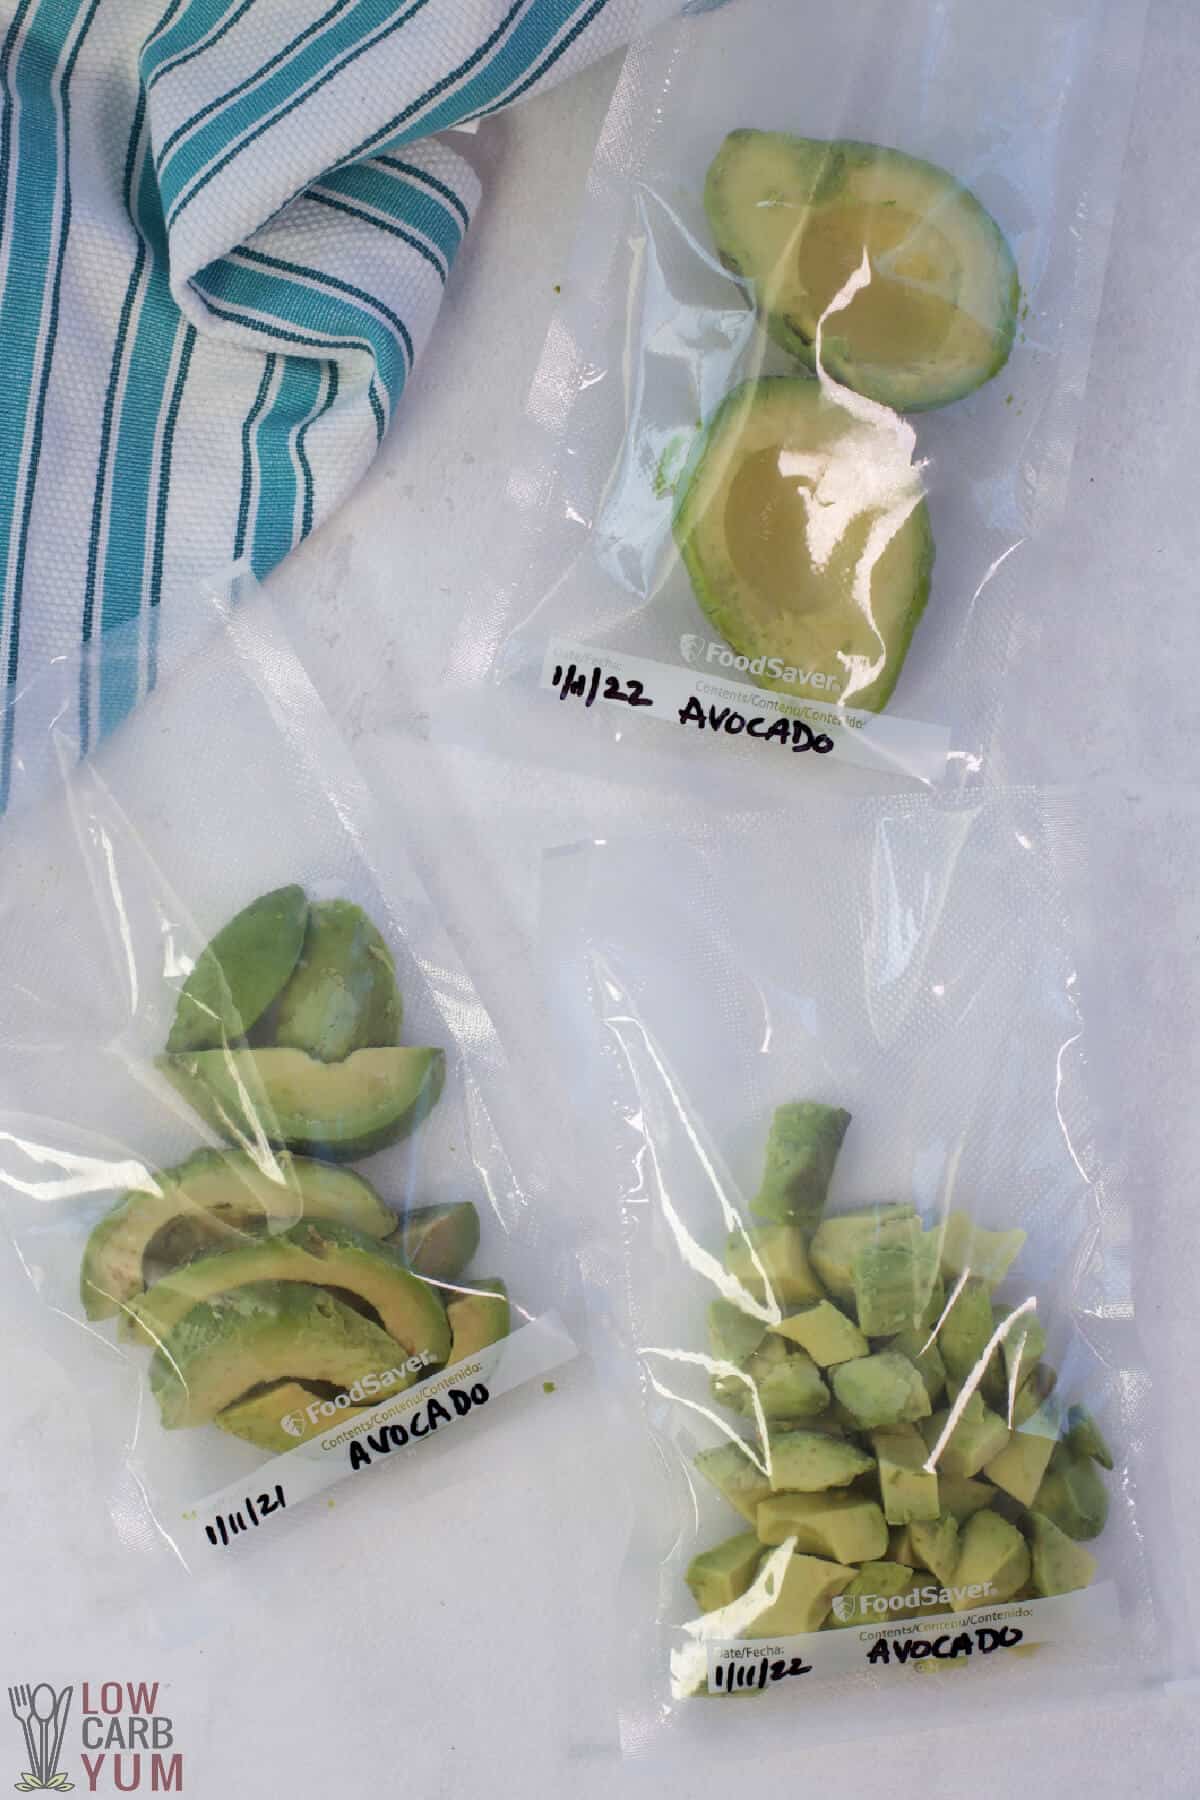 frozen avocado in vacuum sealer freezer bags